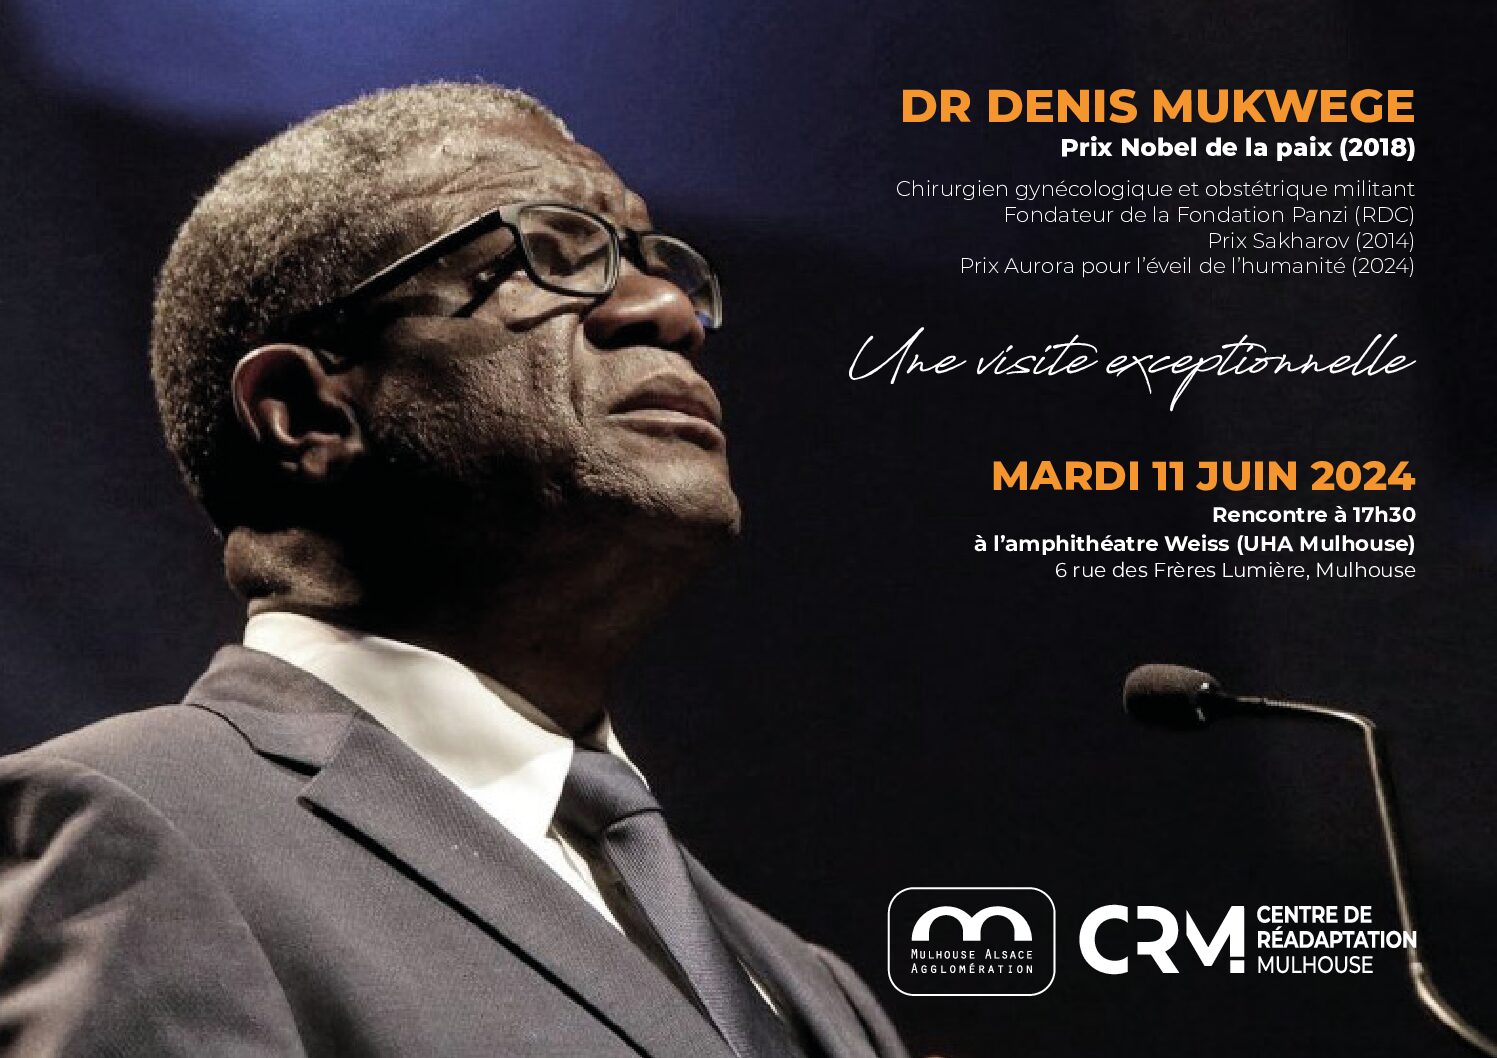 Docteur Denis MUKWEGE, prix Nobel de la paix 2018, en visite au Centre de Réadaptation de Mulhouse, mardi 11 juin 2024.